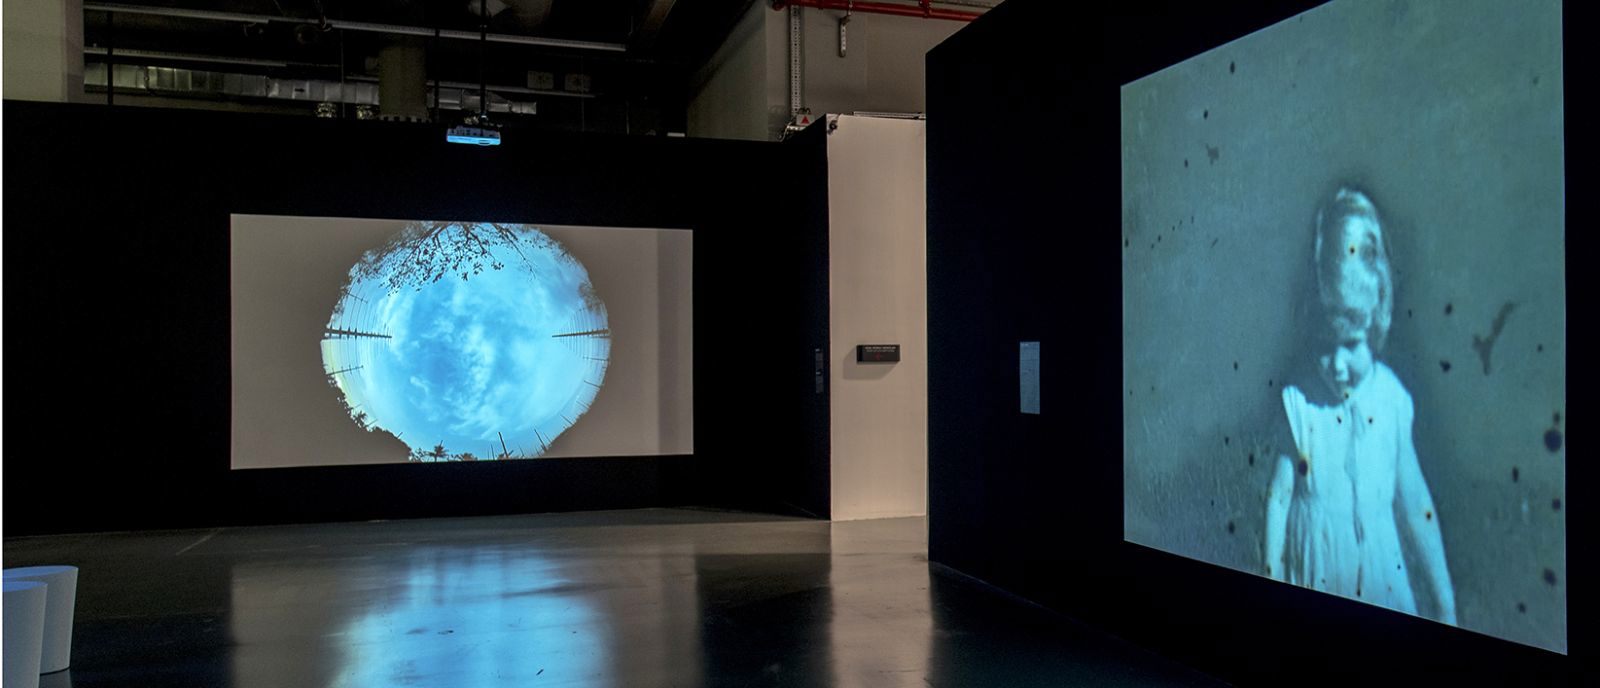 Teknoloji üzerine "Uluslararası Sanatçı Filmleri" İstanbul Modern'de